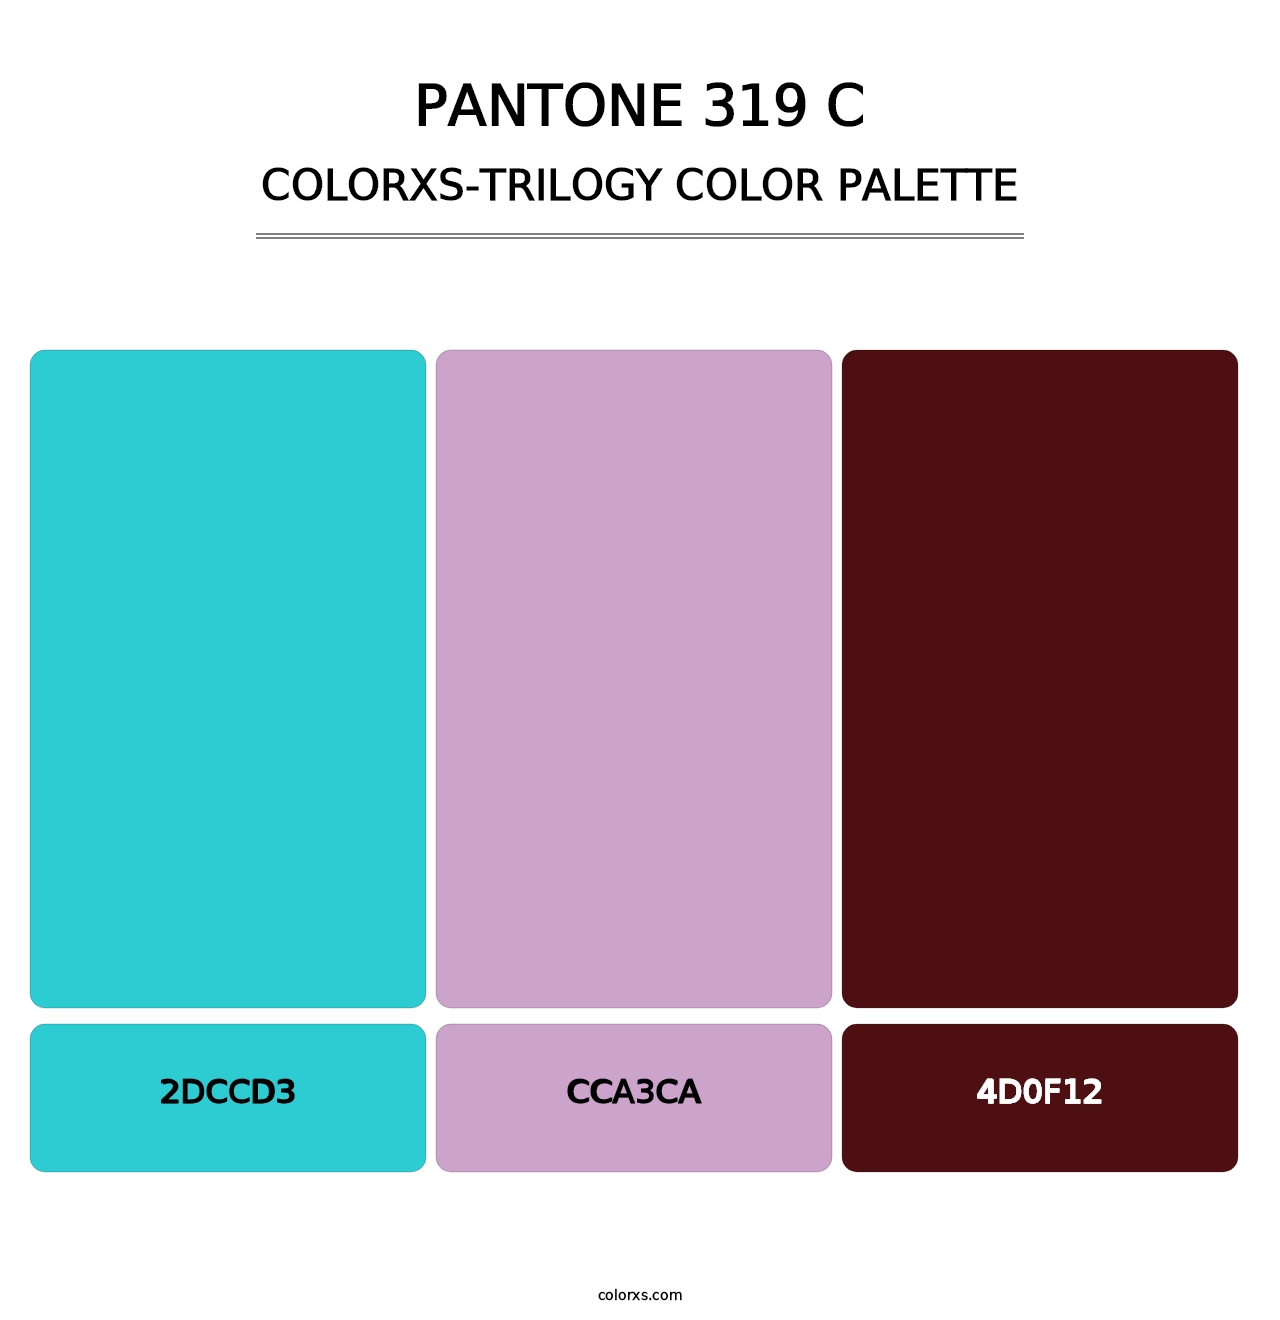 PANTONE 319 C - Colorxs Trilogy Palette